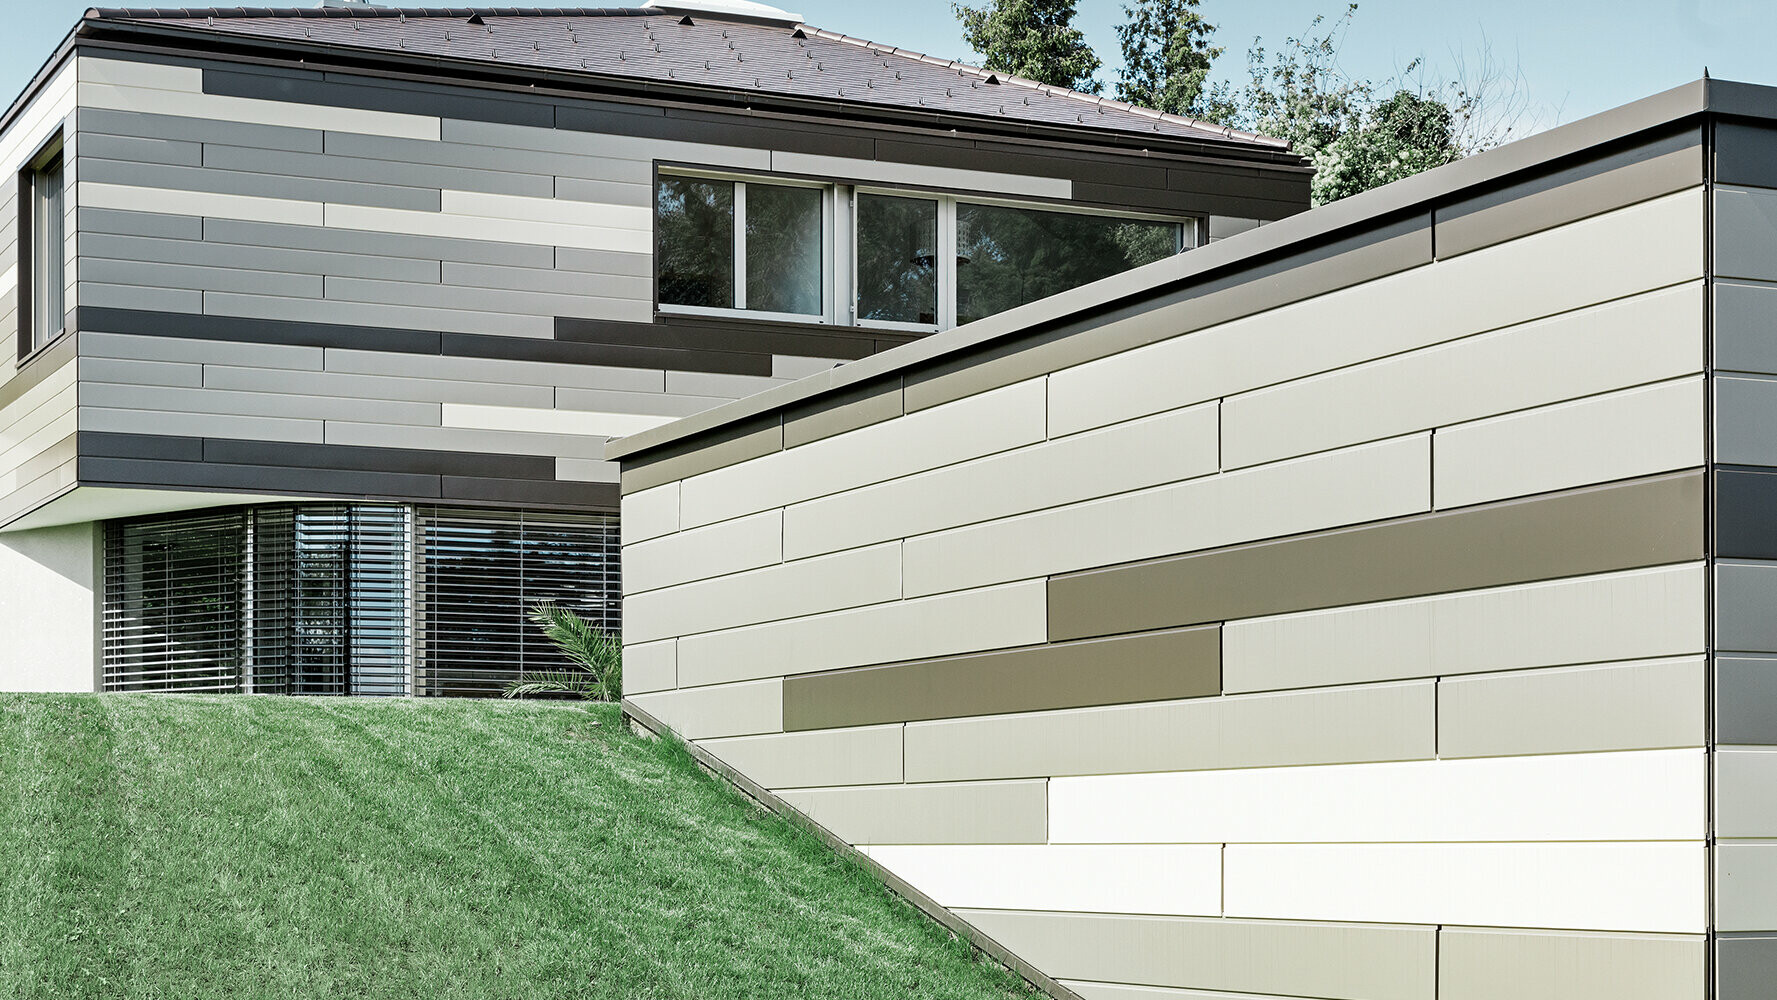 Moderní obytný dům s fasádním systémem PREFA Siding ve třech různých barvách